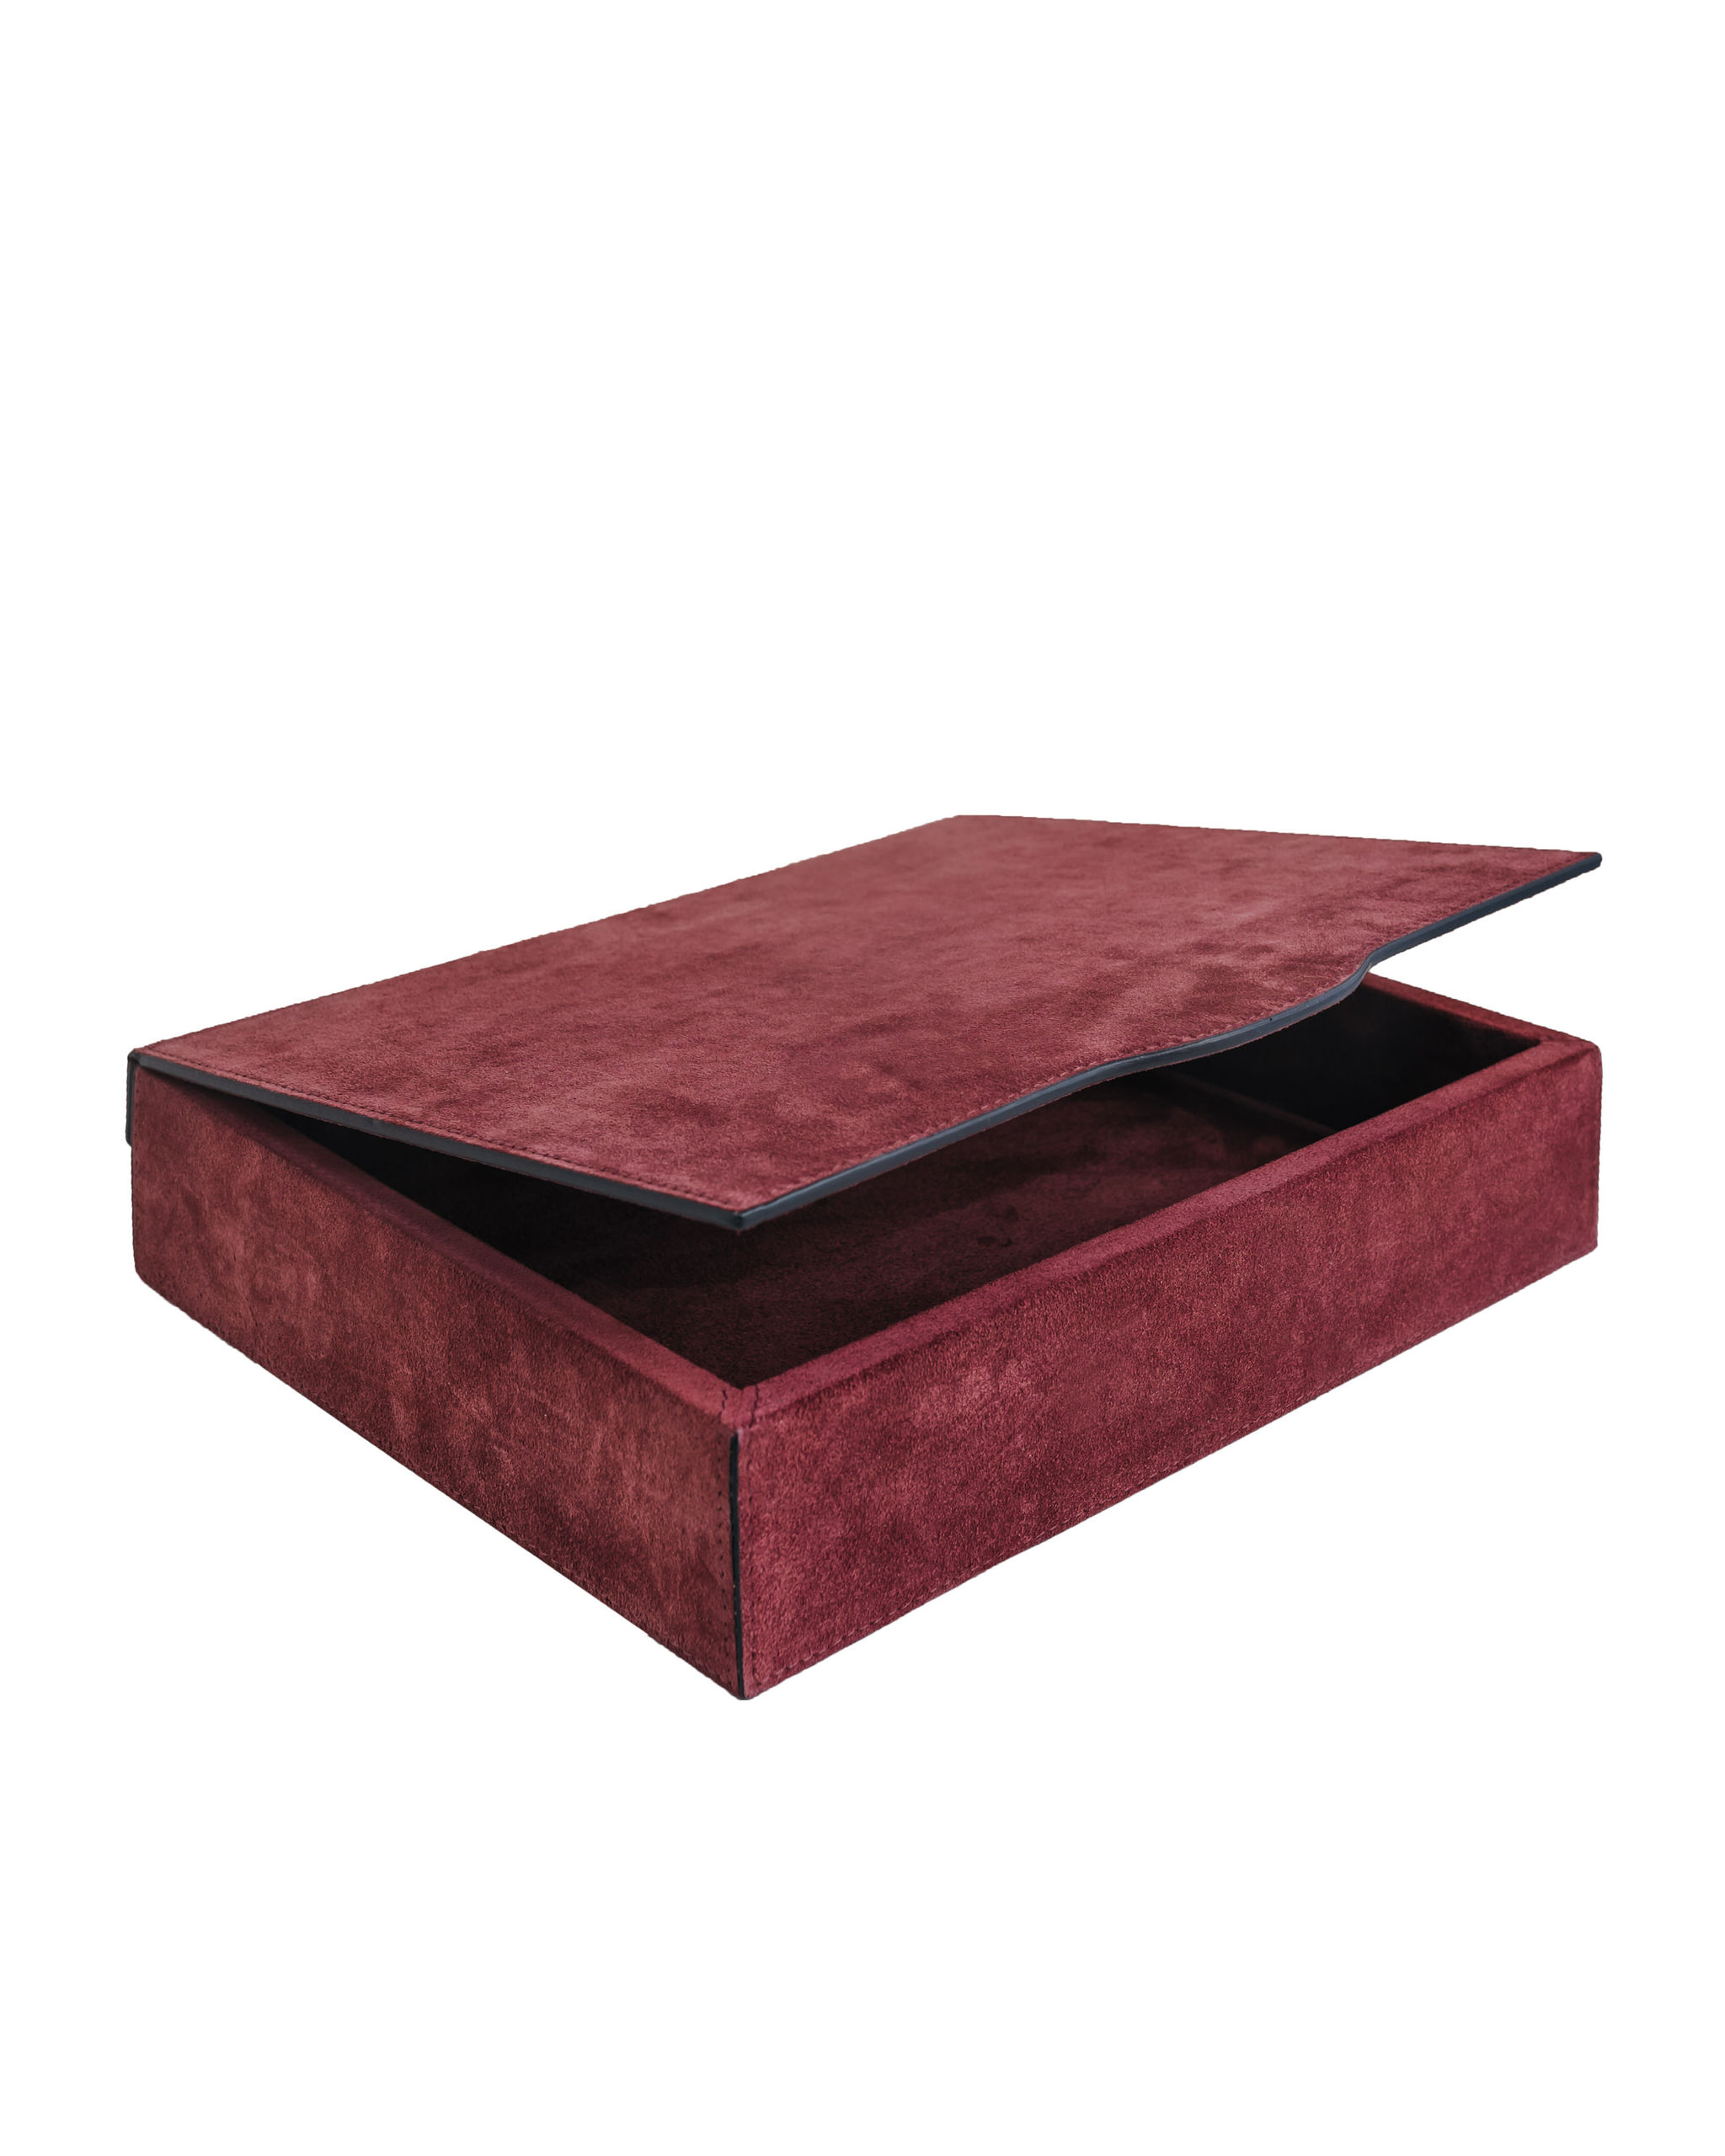 Giobagnara “Luna trinket box retangular large” karp